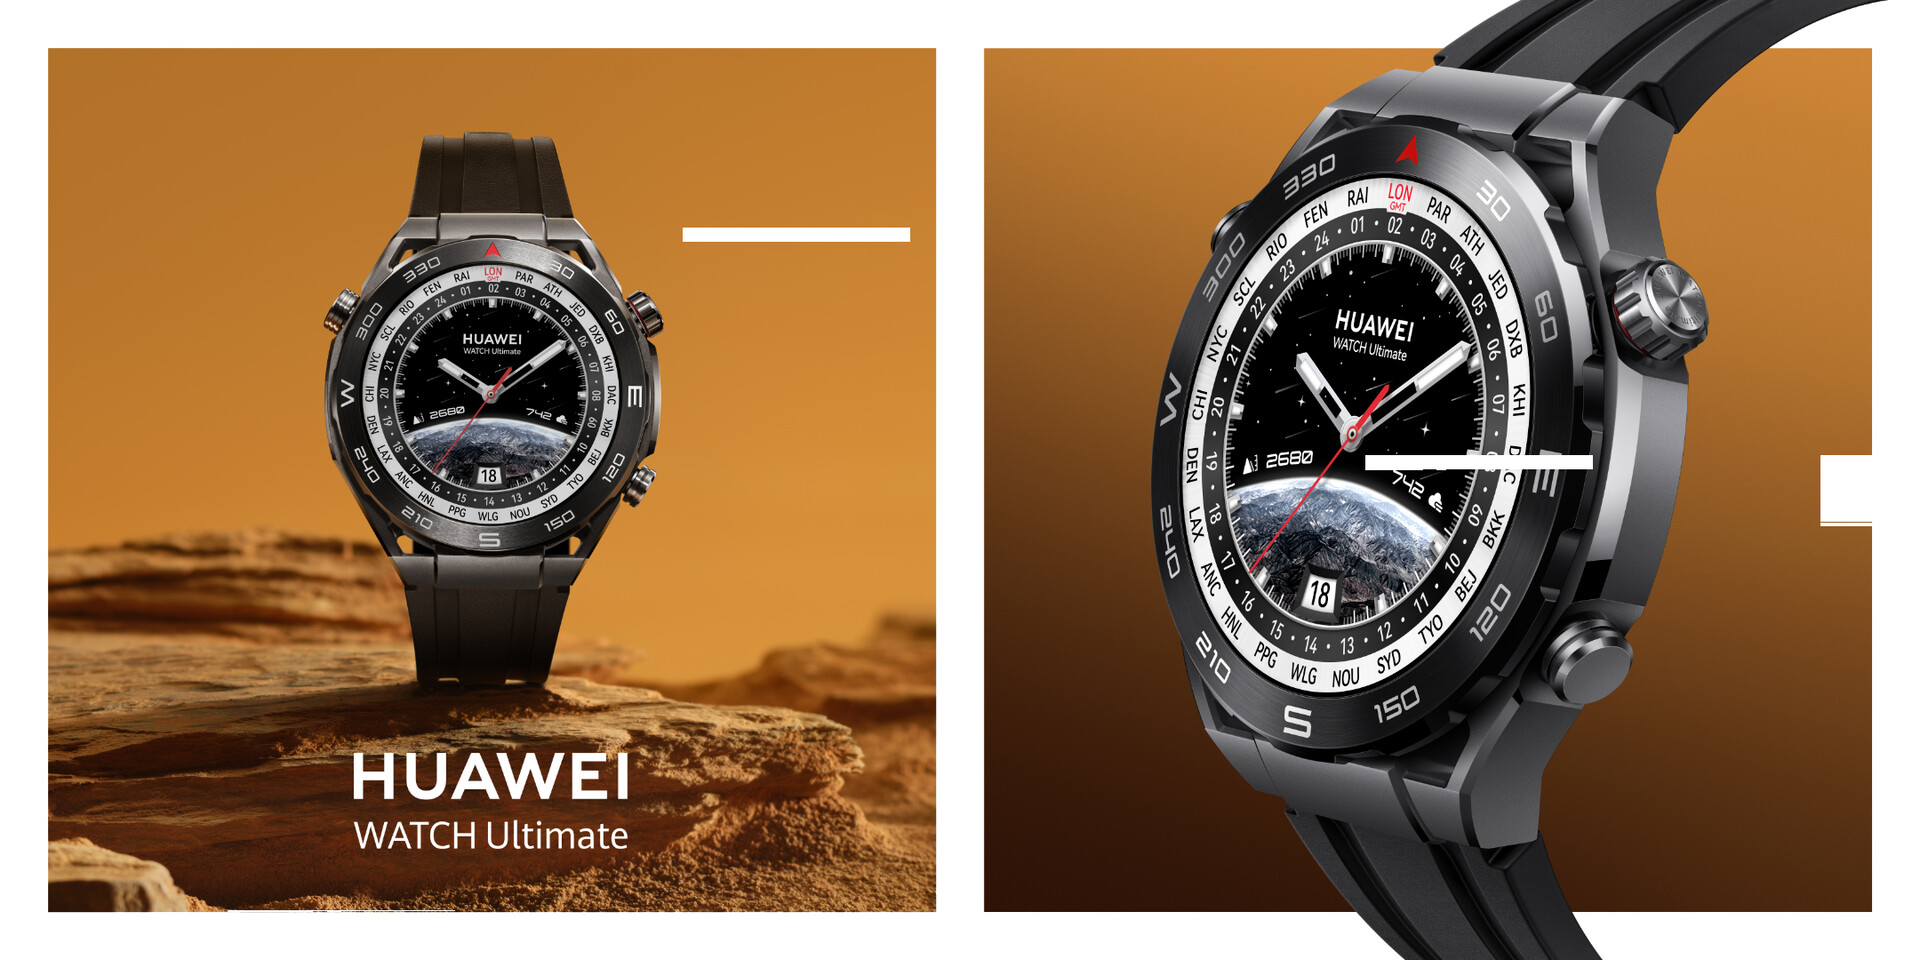 La Huawei Watch Ultimate a fait ses débuts en Europe sans liaison satellite, mais avec un cadeau